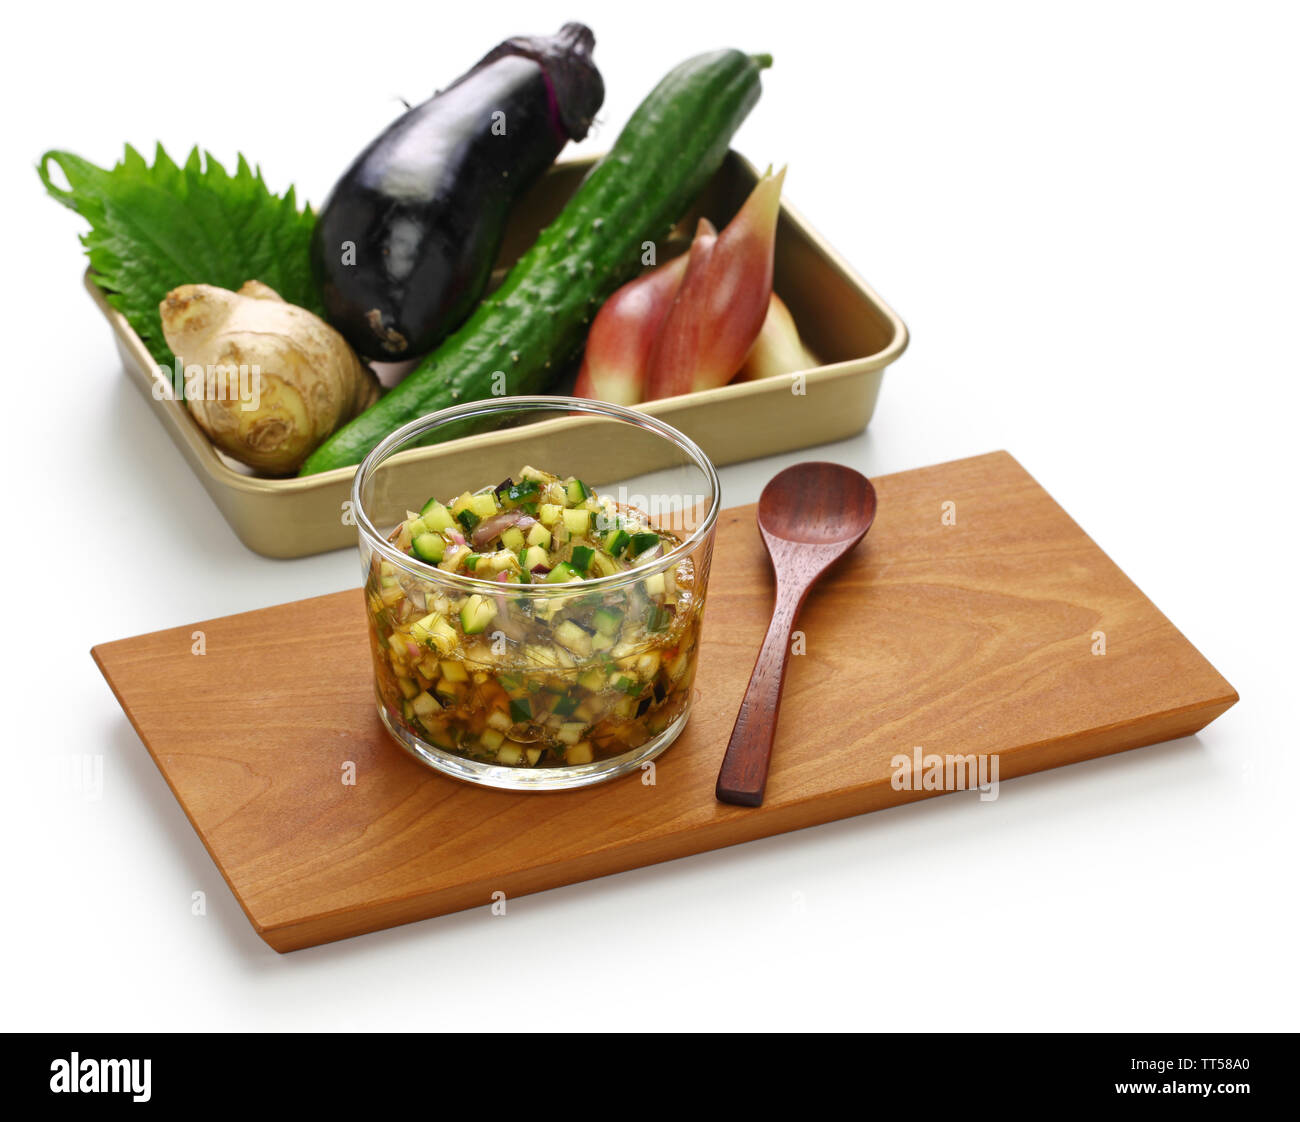 La cuisine végétalienne japonais, Dashi est une salade de légumes hachés japonais qui est mis sur le riz ou le tofu. Banque D'Images